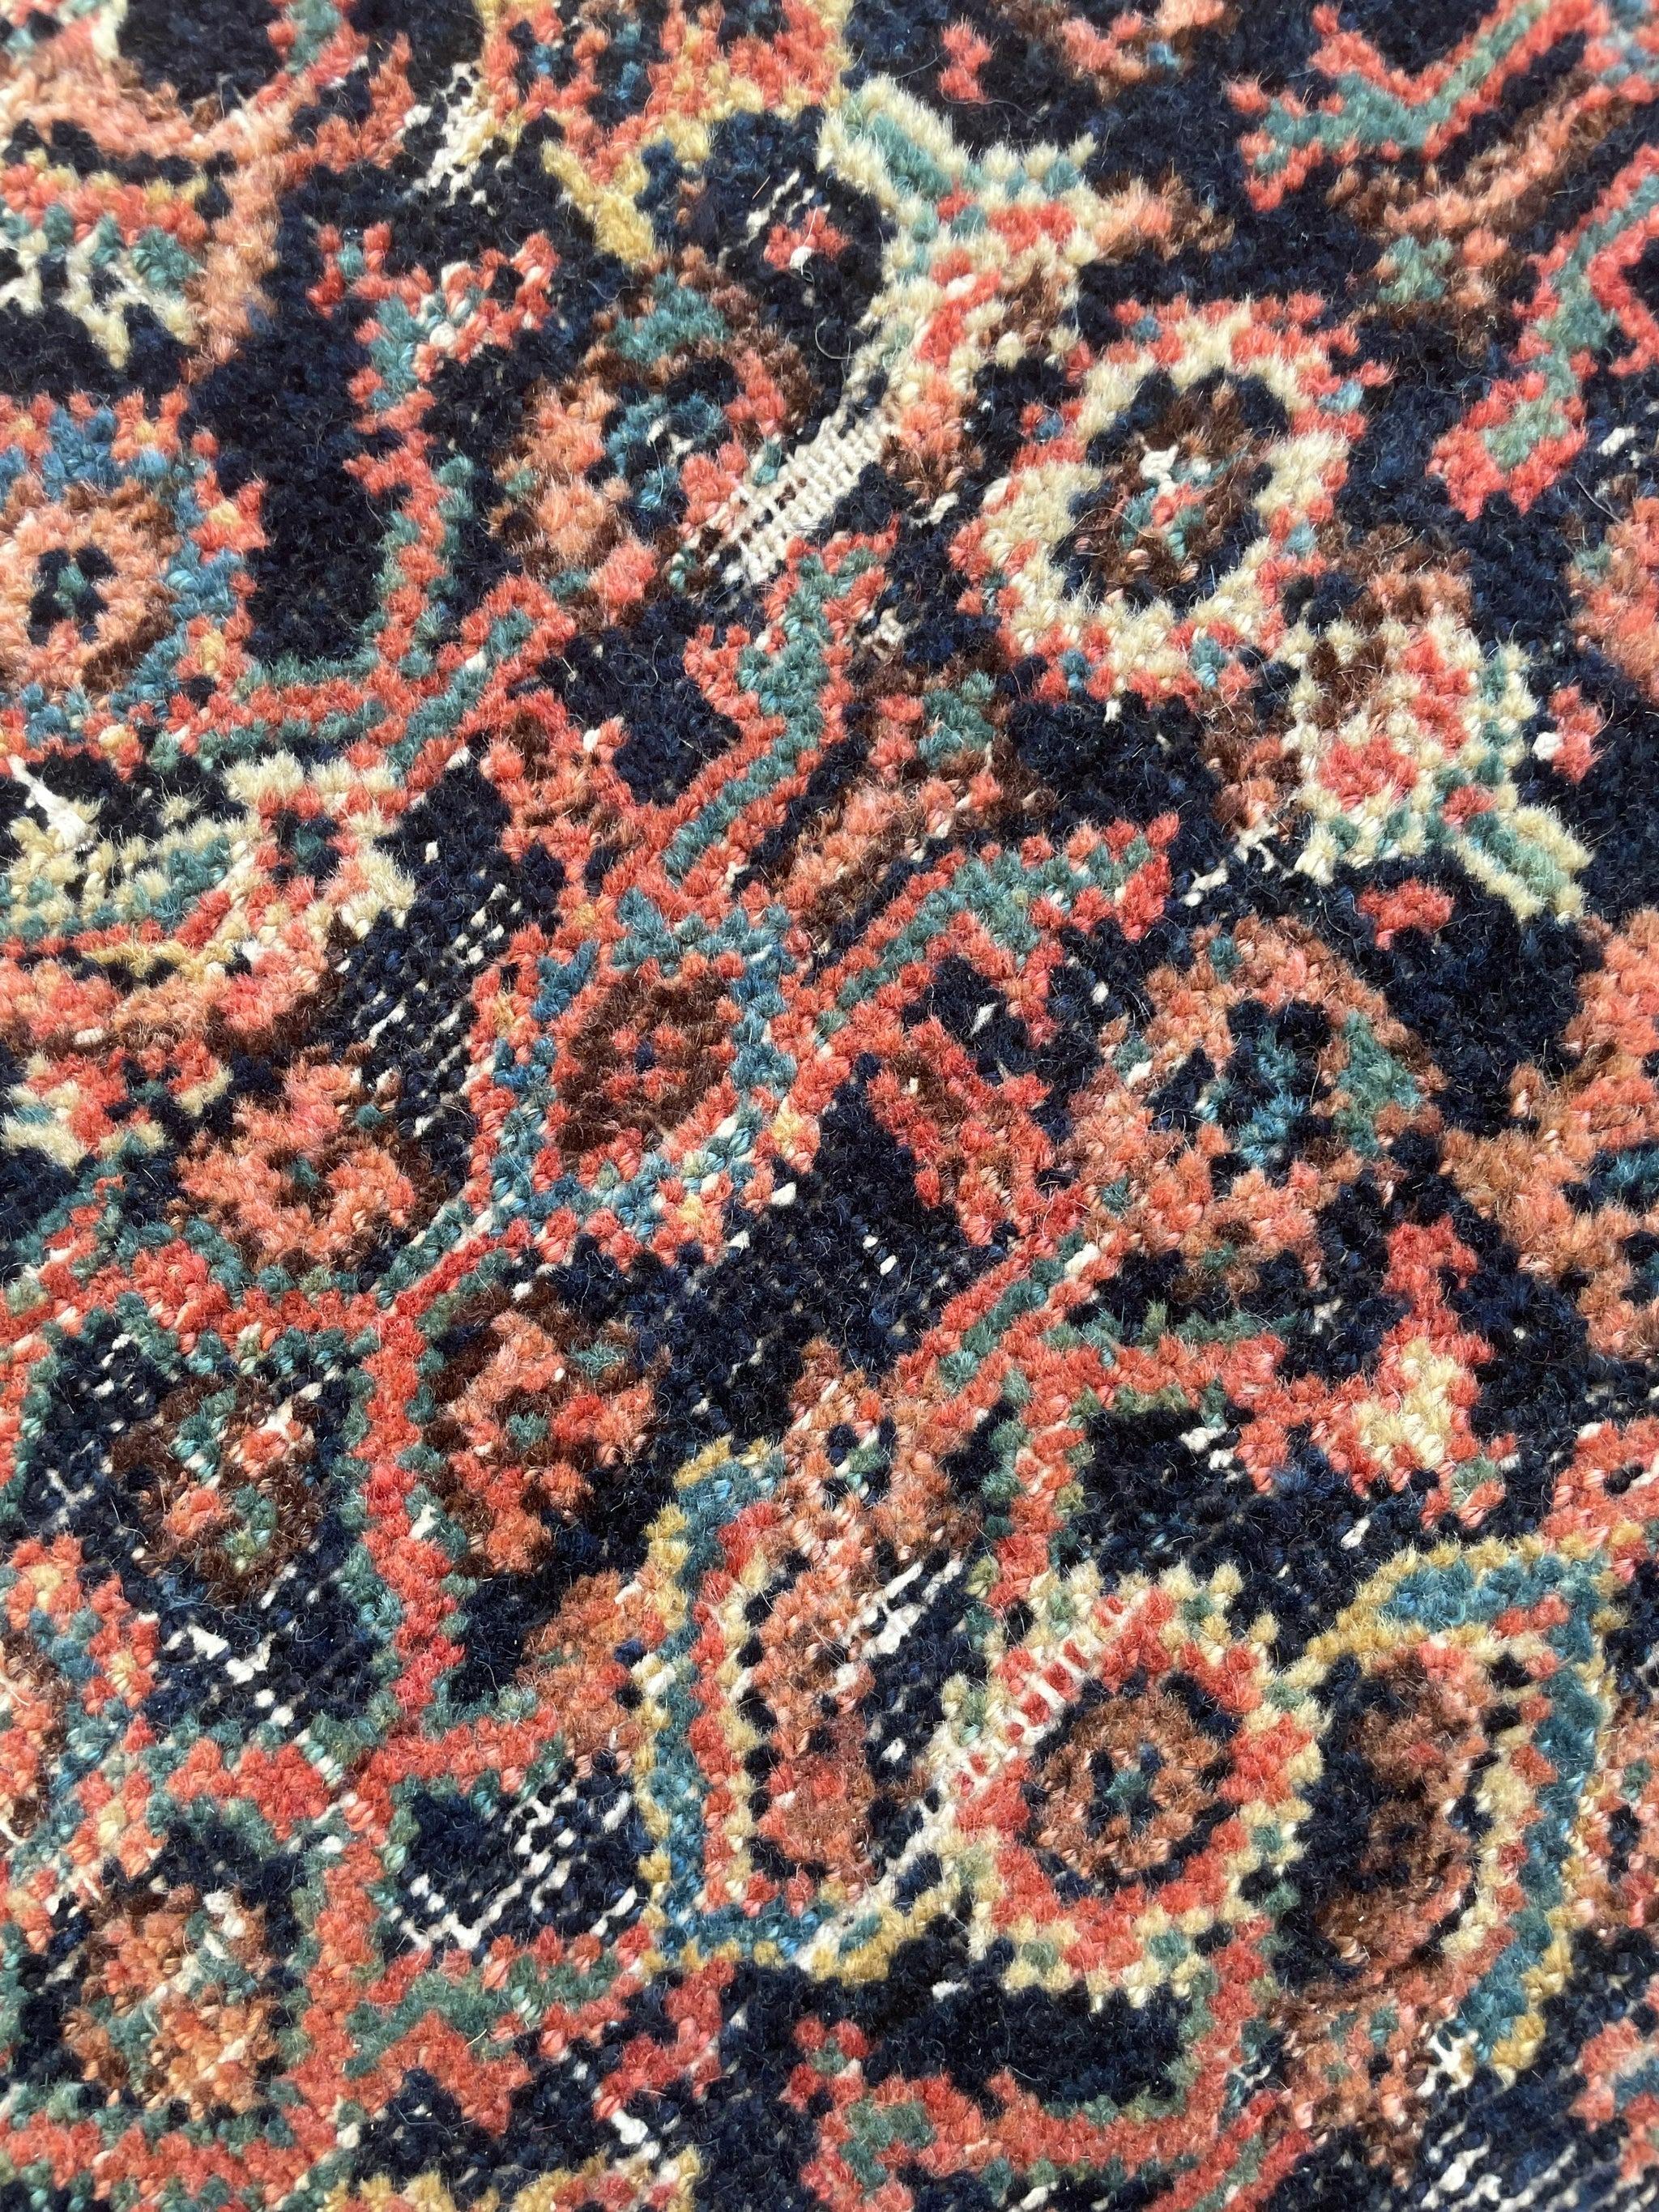 Antique Persian Carpet Rug in Deep Old-World Indigo, circa 1900-1915's For Sale 7